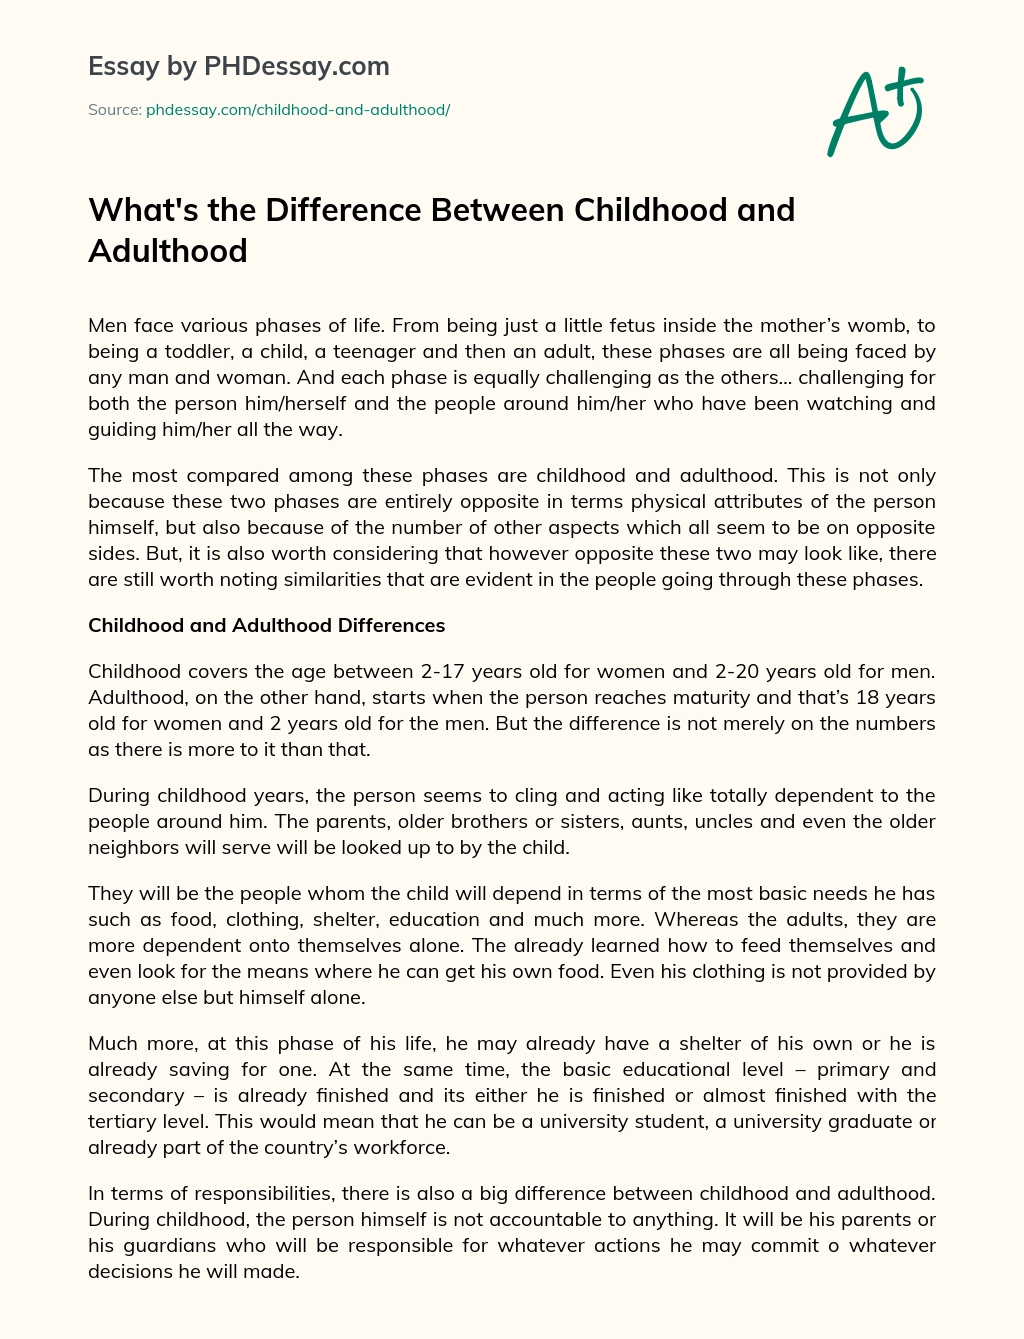 Vad är skillnaden mellan barndom och Vuxenuppsats